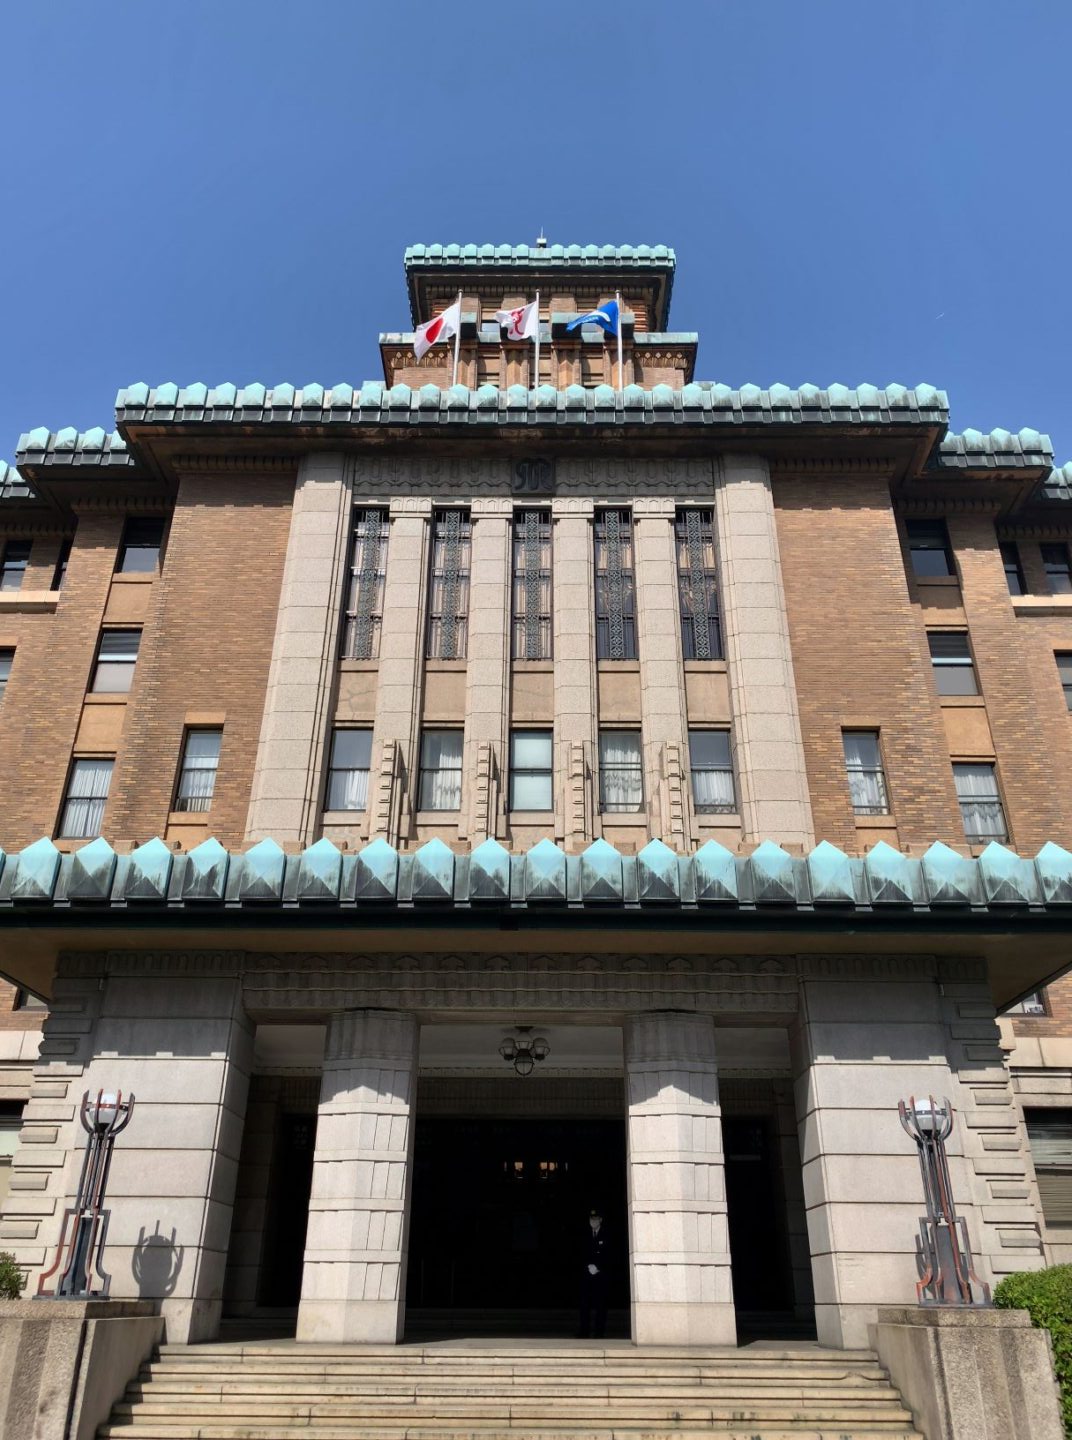 神奈川県庁本庁舎 - Kanagawa Prefectural Government Main Building